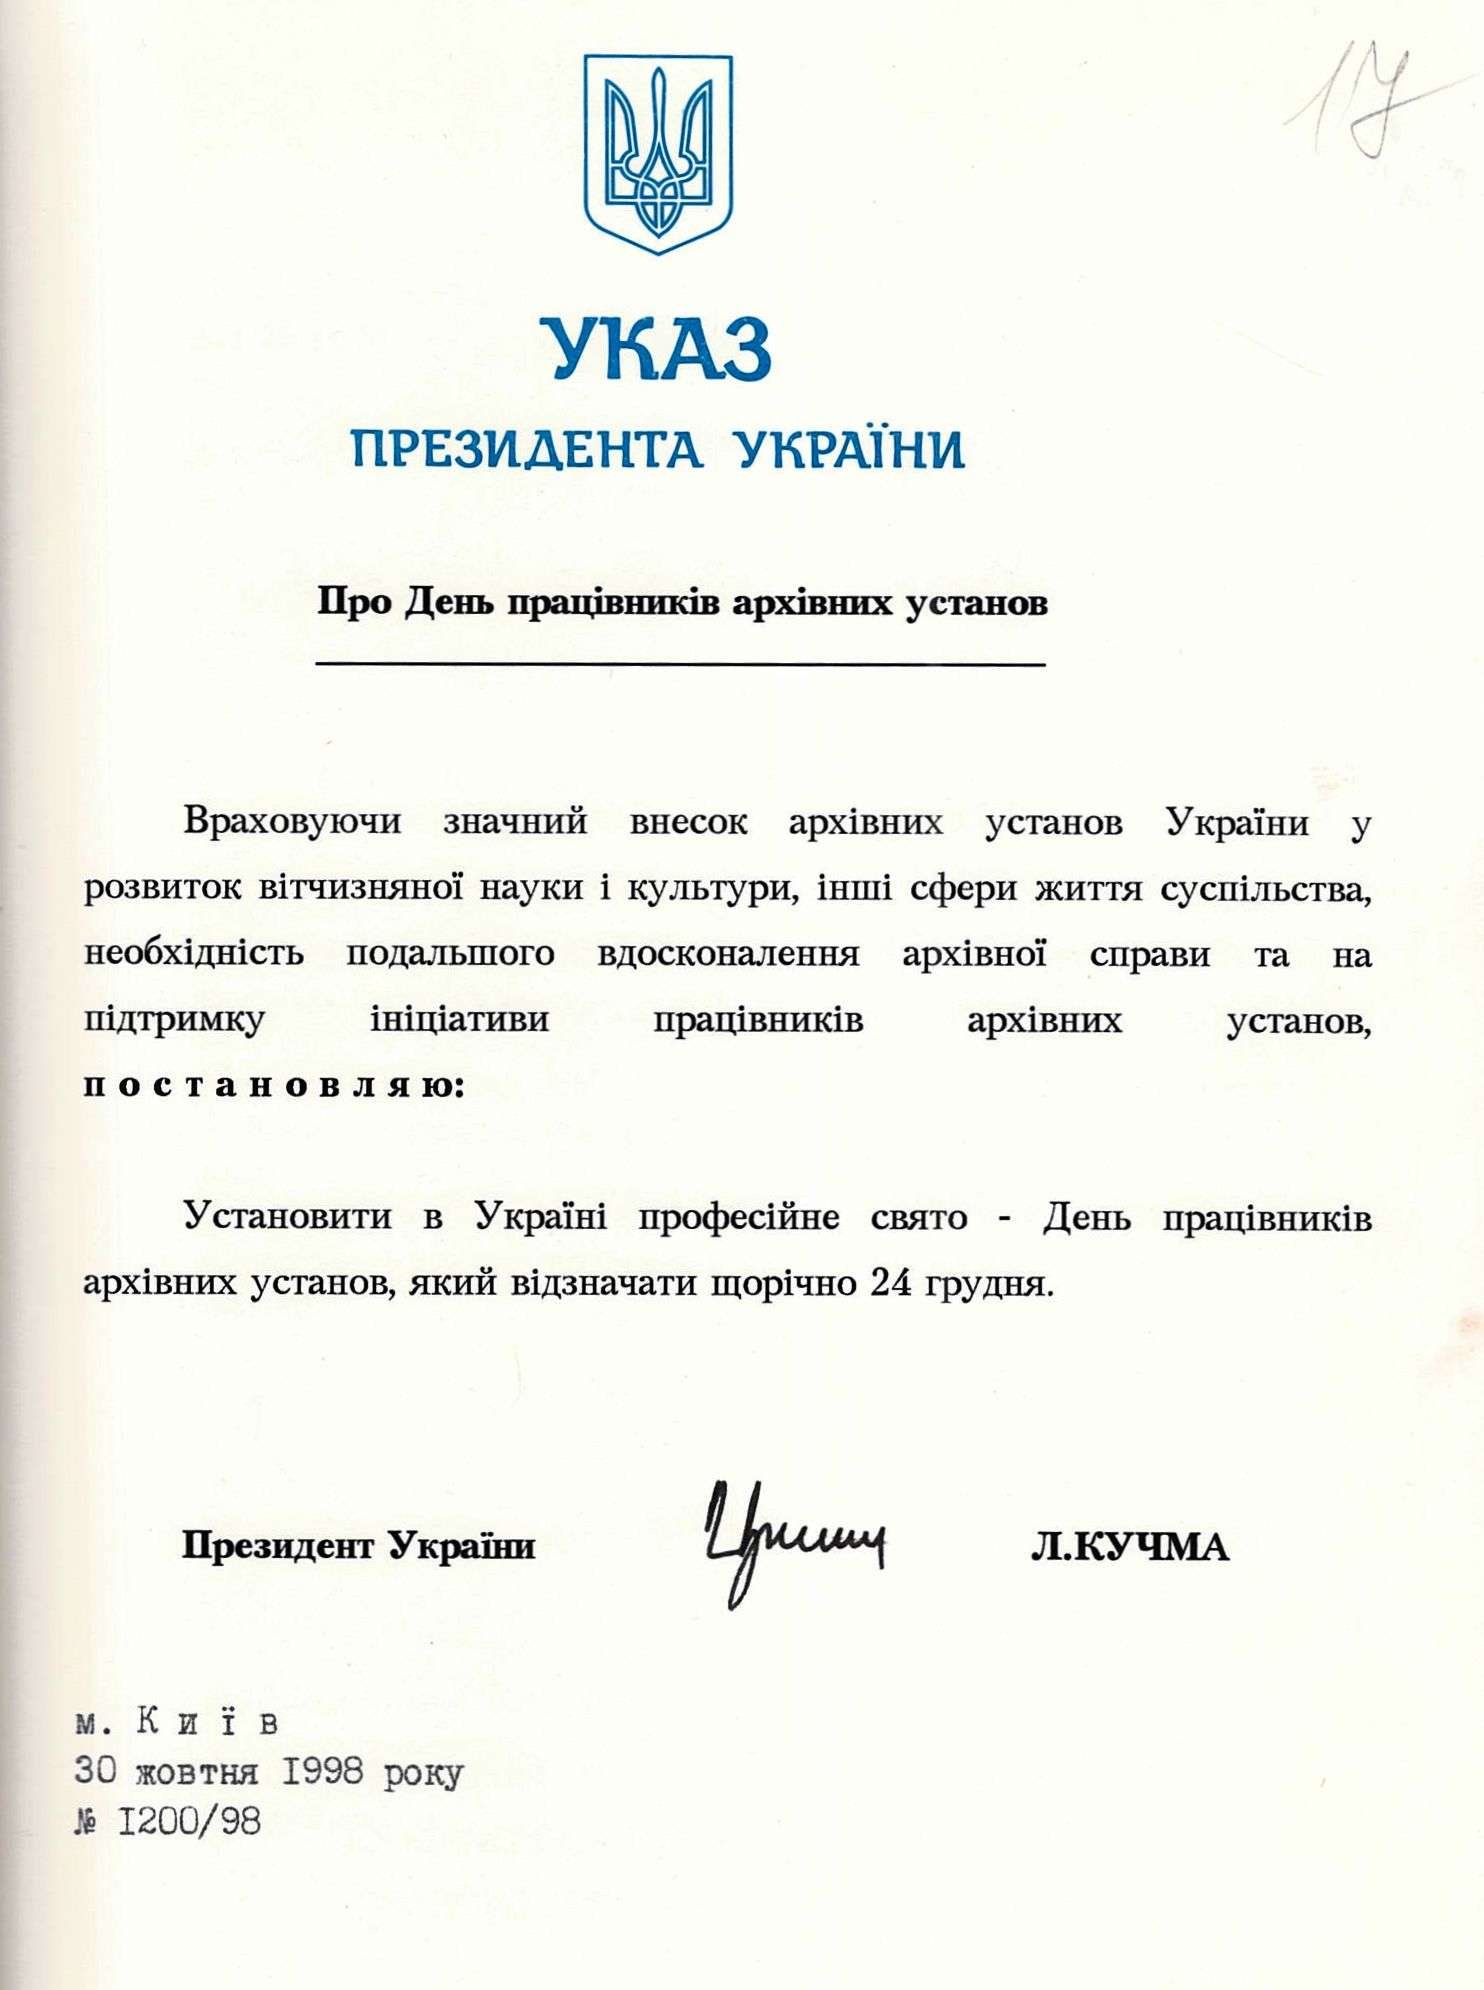 Указ Президента України про День працівників архівних установ. 30 жовтня 1998 р.